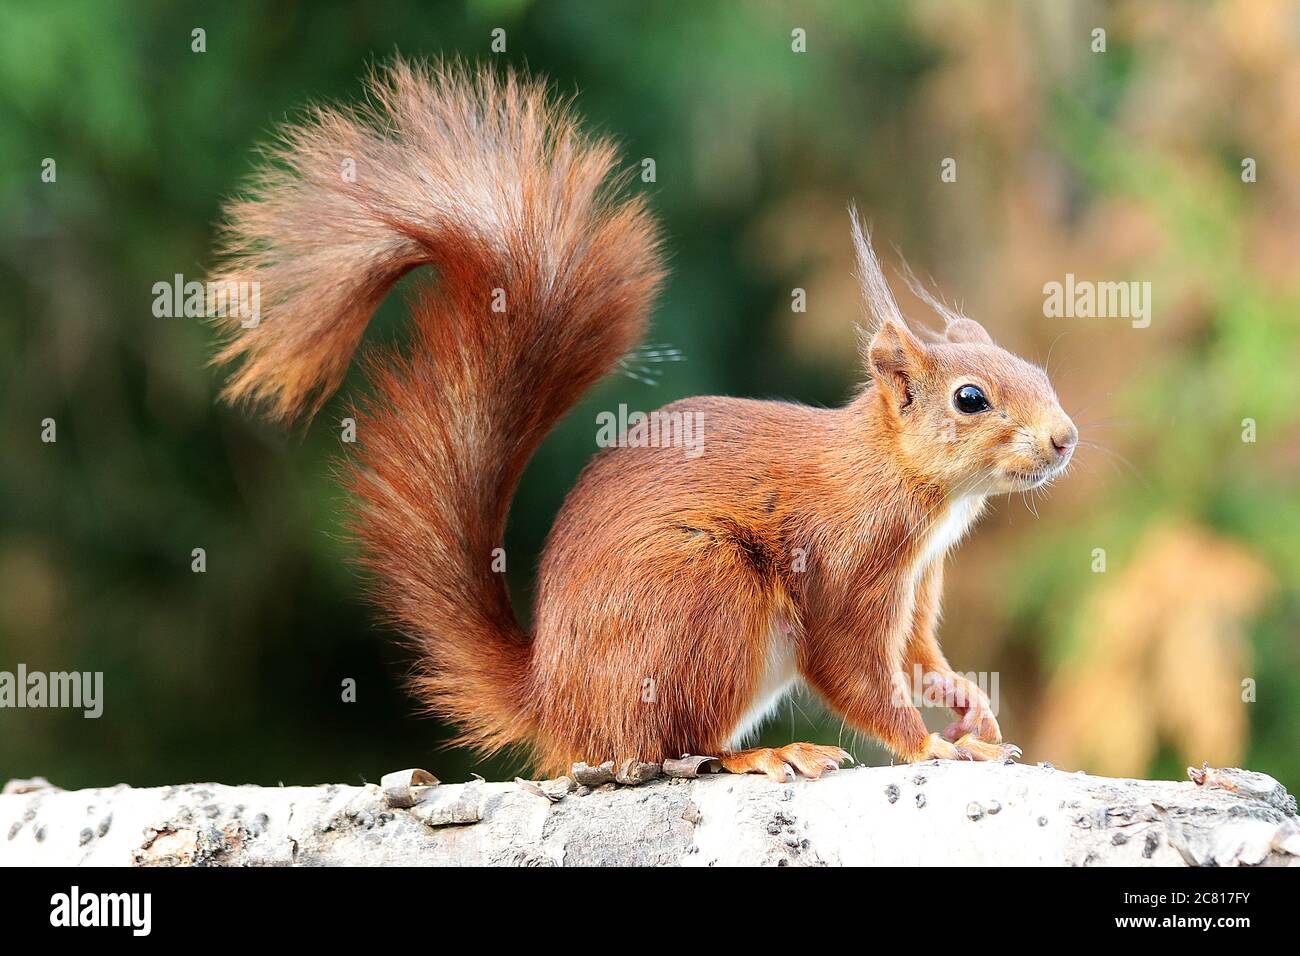 Les écureuils rouges avec leurs petites oreilles tufty sont un tel plaisir. De belles petites créatures. Leur queue bushy étonnante peut être aussi longtemps que leur corps Banque D'Images